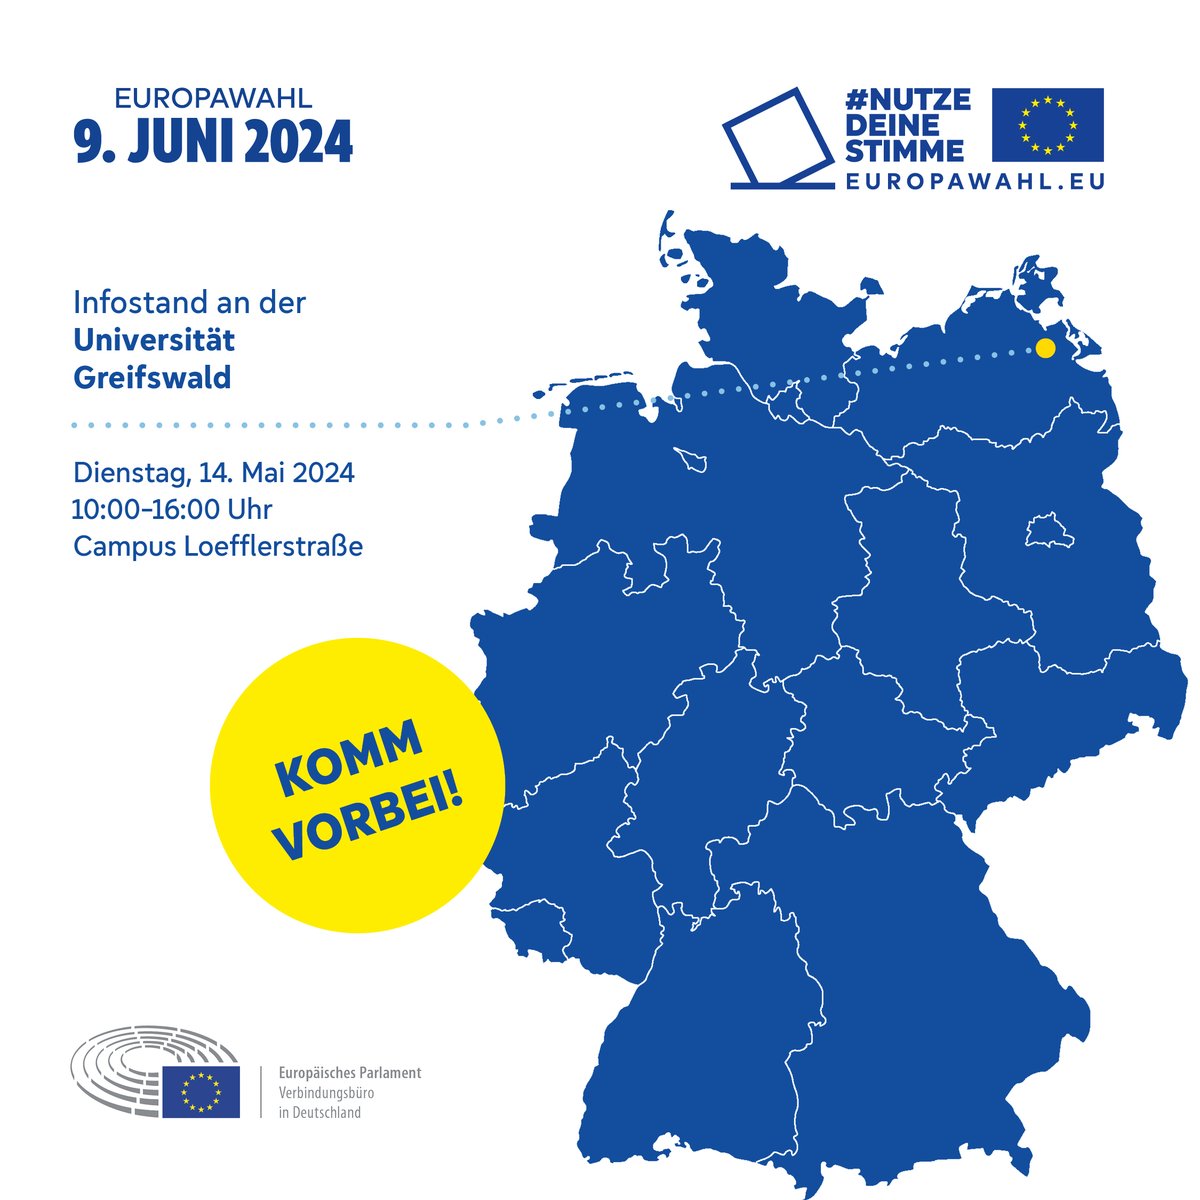 Europawahl-Info: Das EU-Parlamentsbüro besucht die Uni Greifswald am 14. Mai. Info-Stand von 10:00 bis 16:00 Uhr auf dem Campus Loefflerstraße zur Wahl am 9. Juni 2024. #Europawahl2024